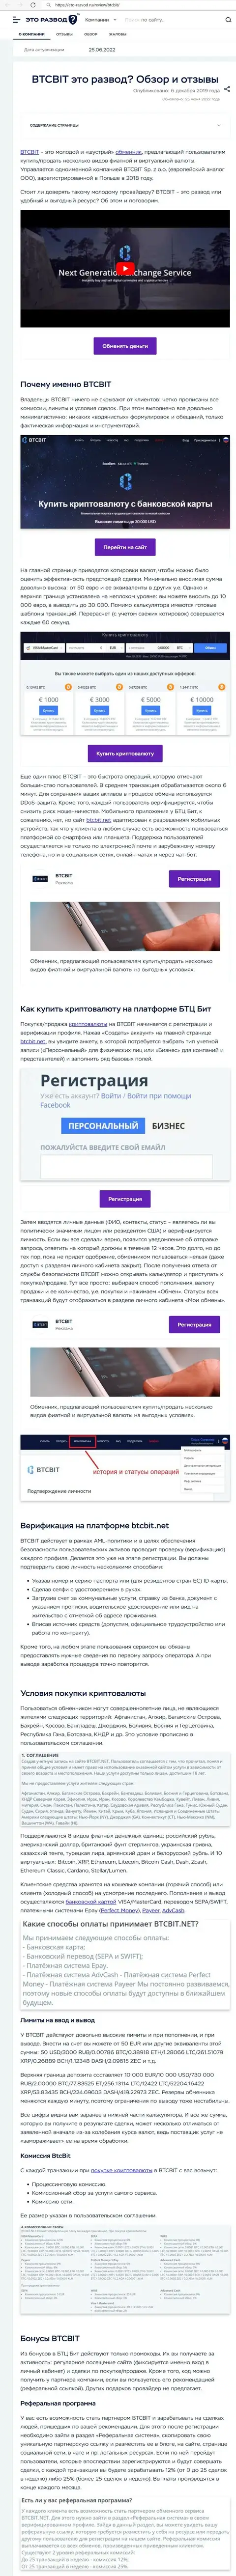 Разбор деятельности и условия для работы компании BTCBit в информационном материале на веб-сервисе eto-razvod ru